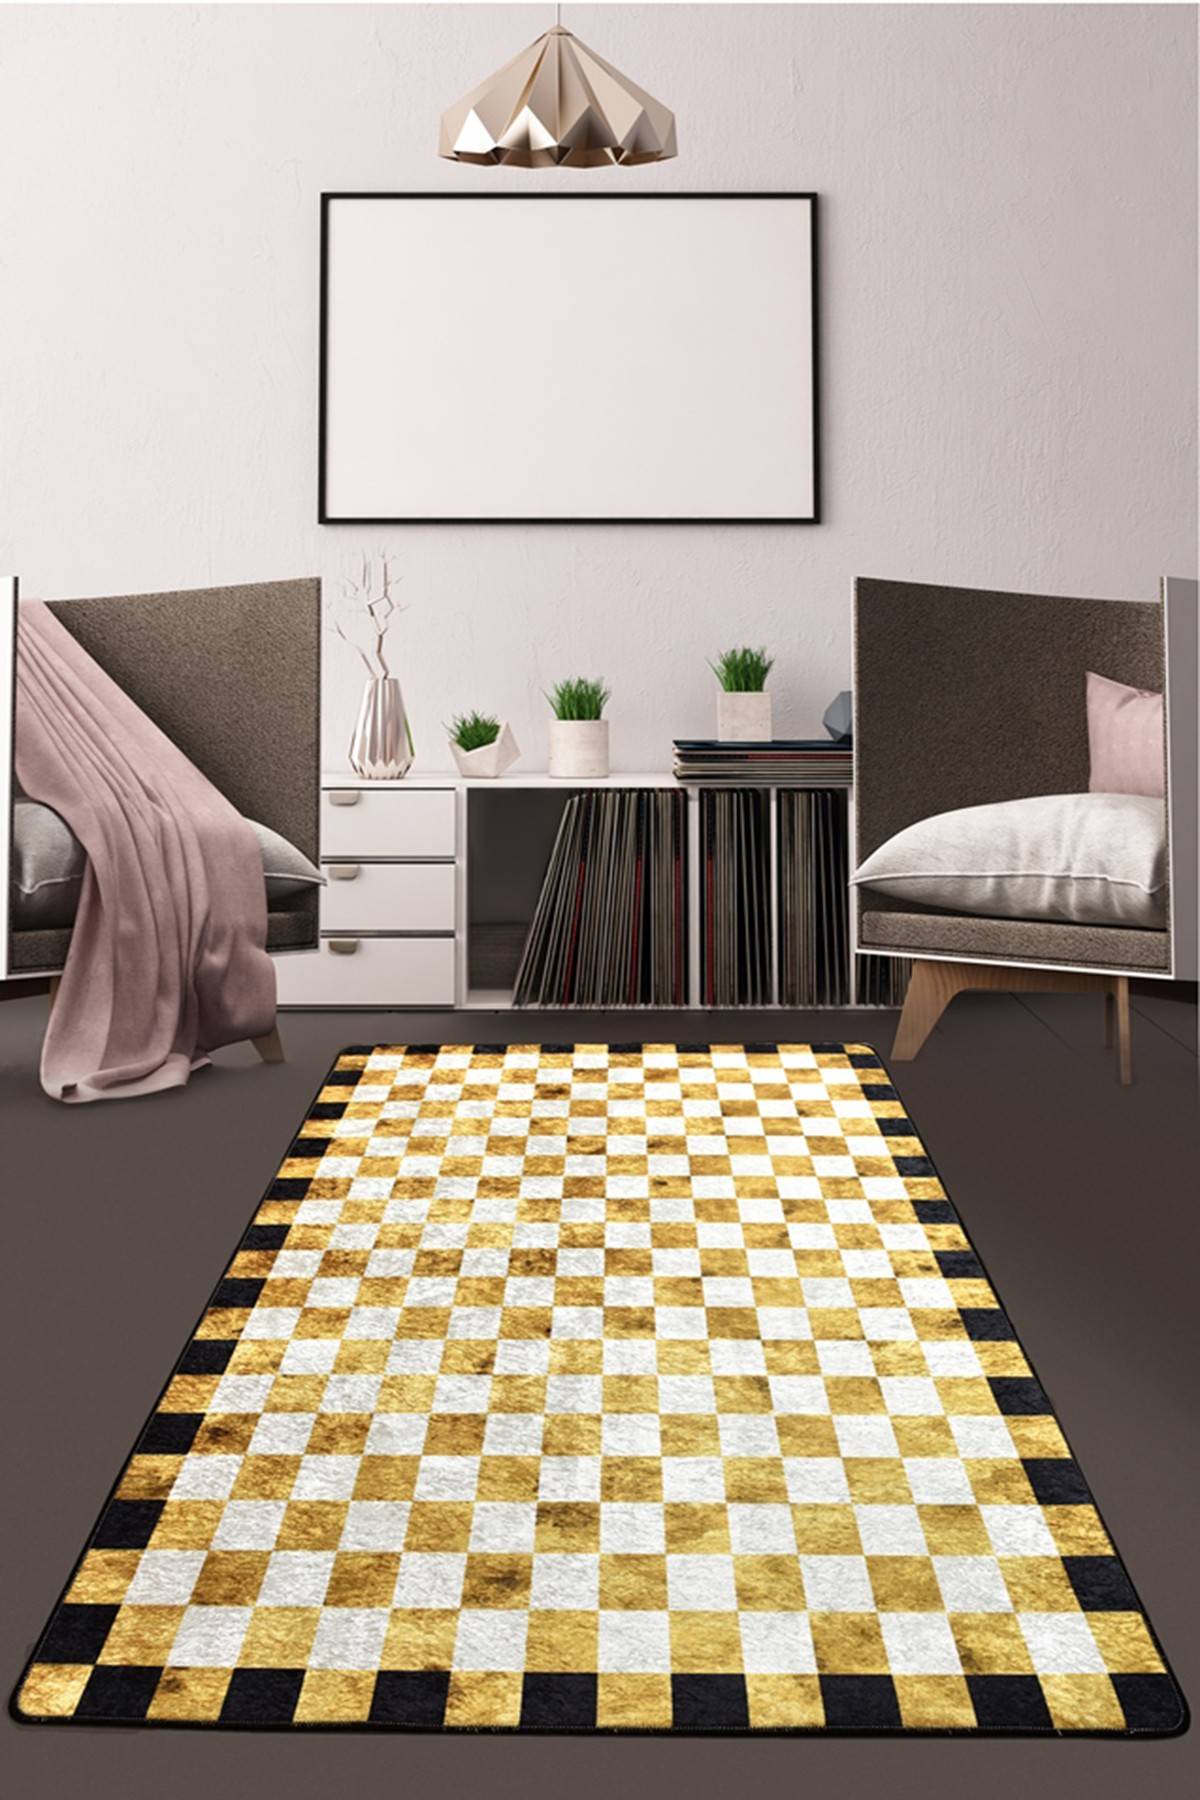 Lixus tapijt 150x230cm Fluweel met goud, wit en zwart ruitpatroon